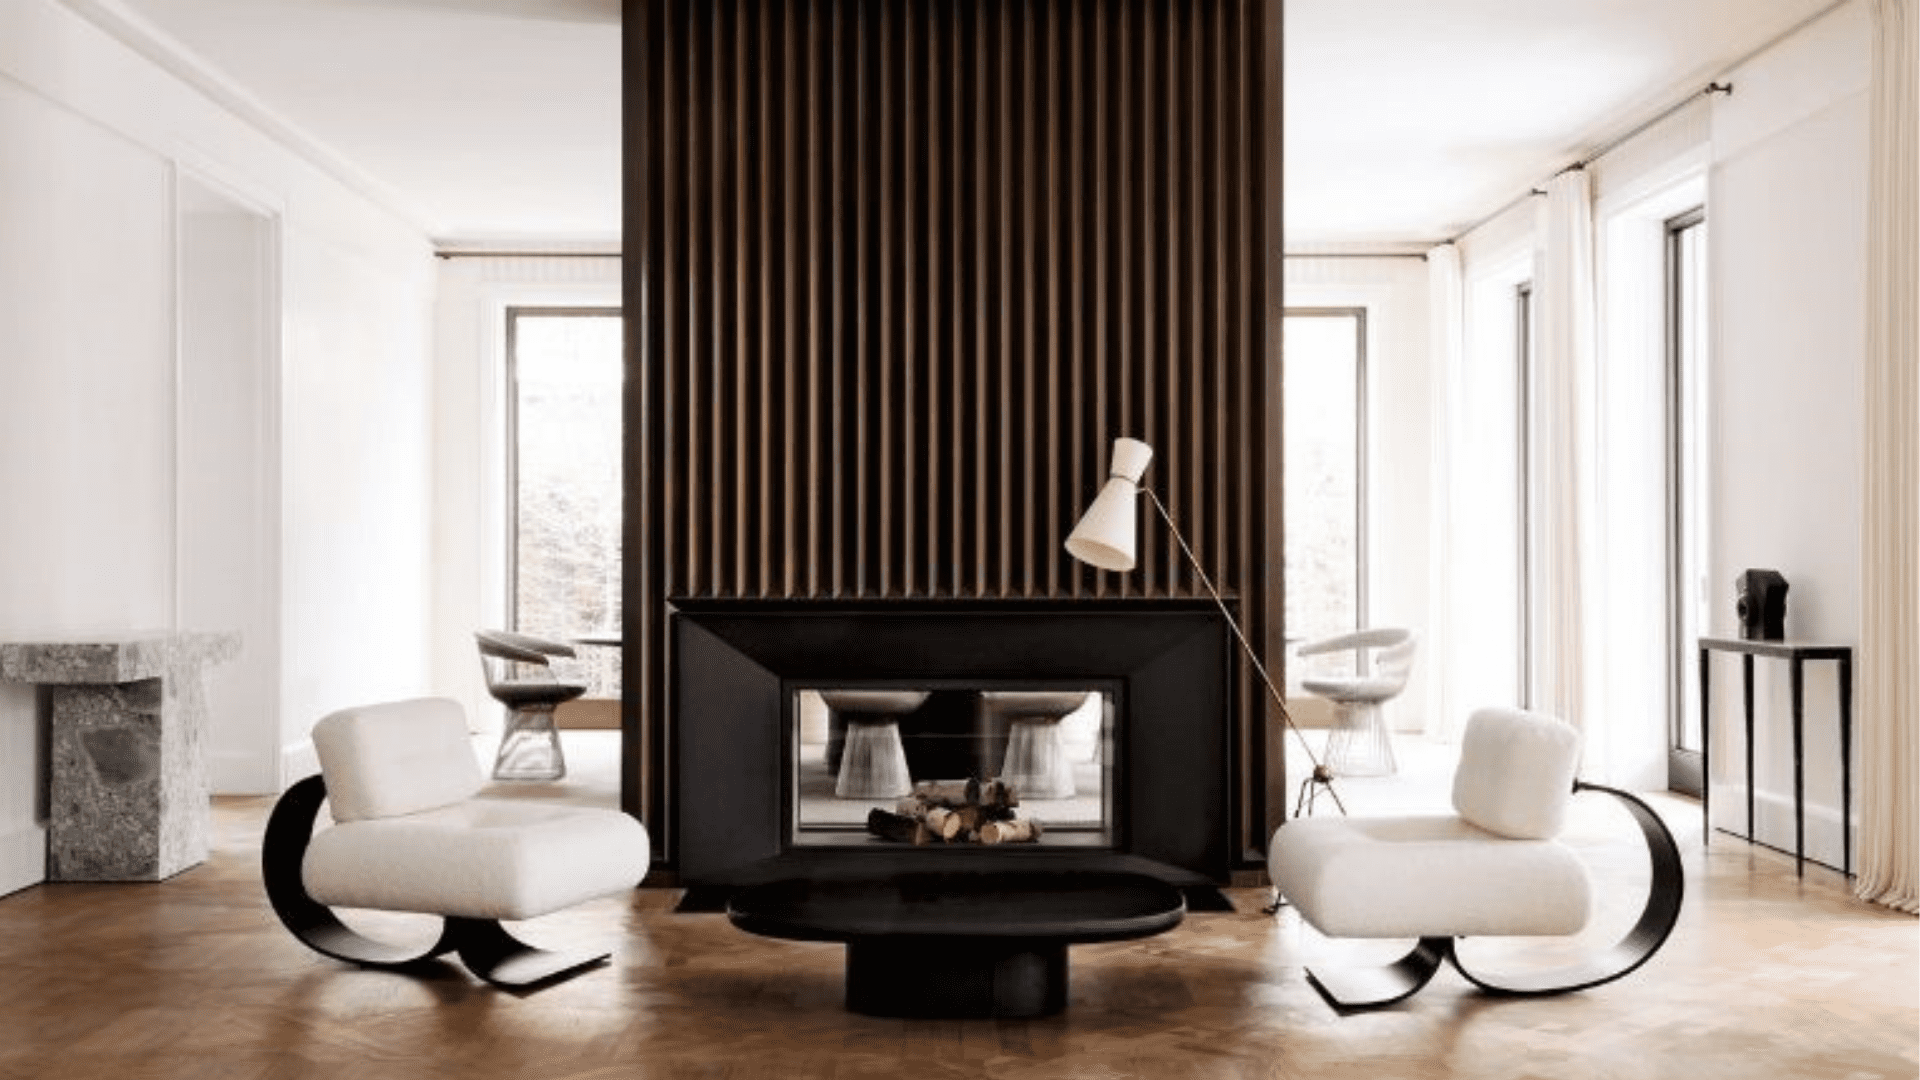 Joseph dirand - minimalist interior designer